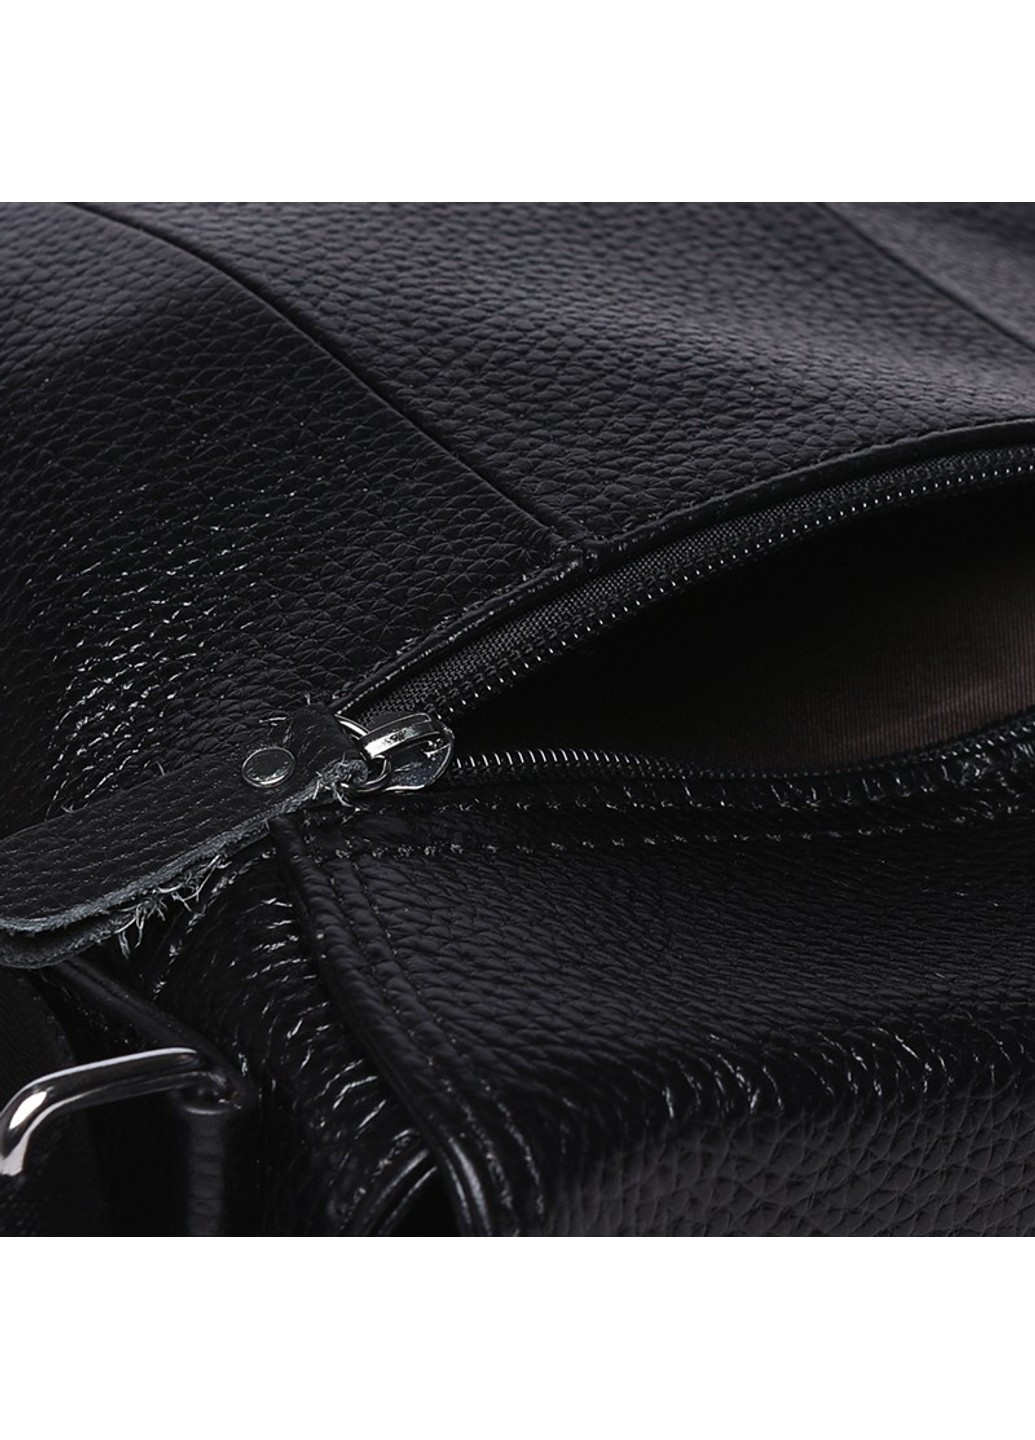 Мужская кожаная сумка K13822-black Borsa Leather (266143235)